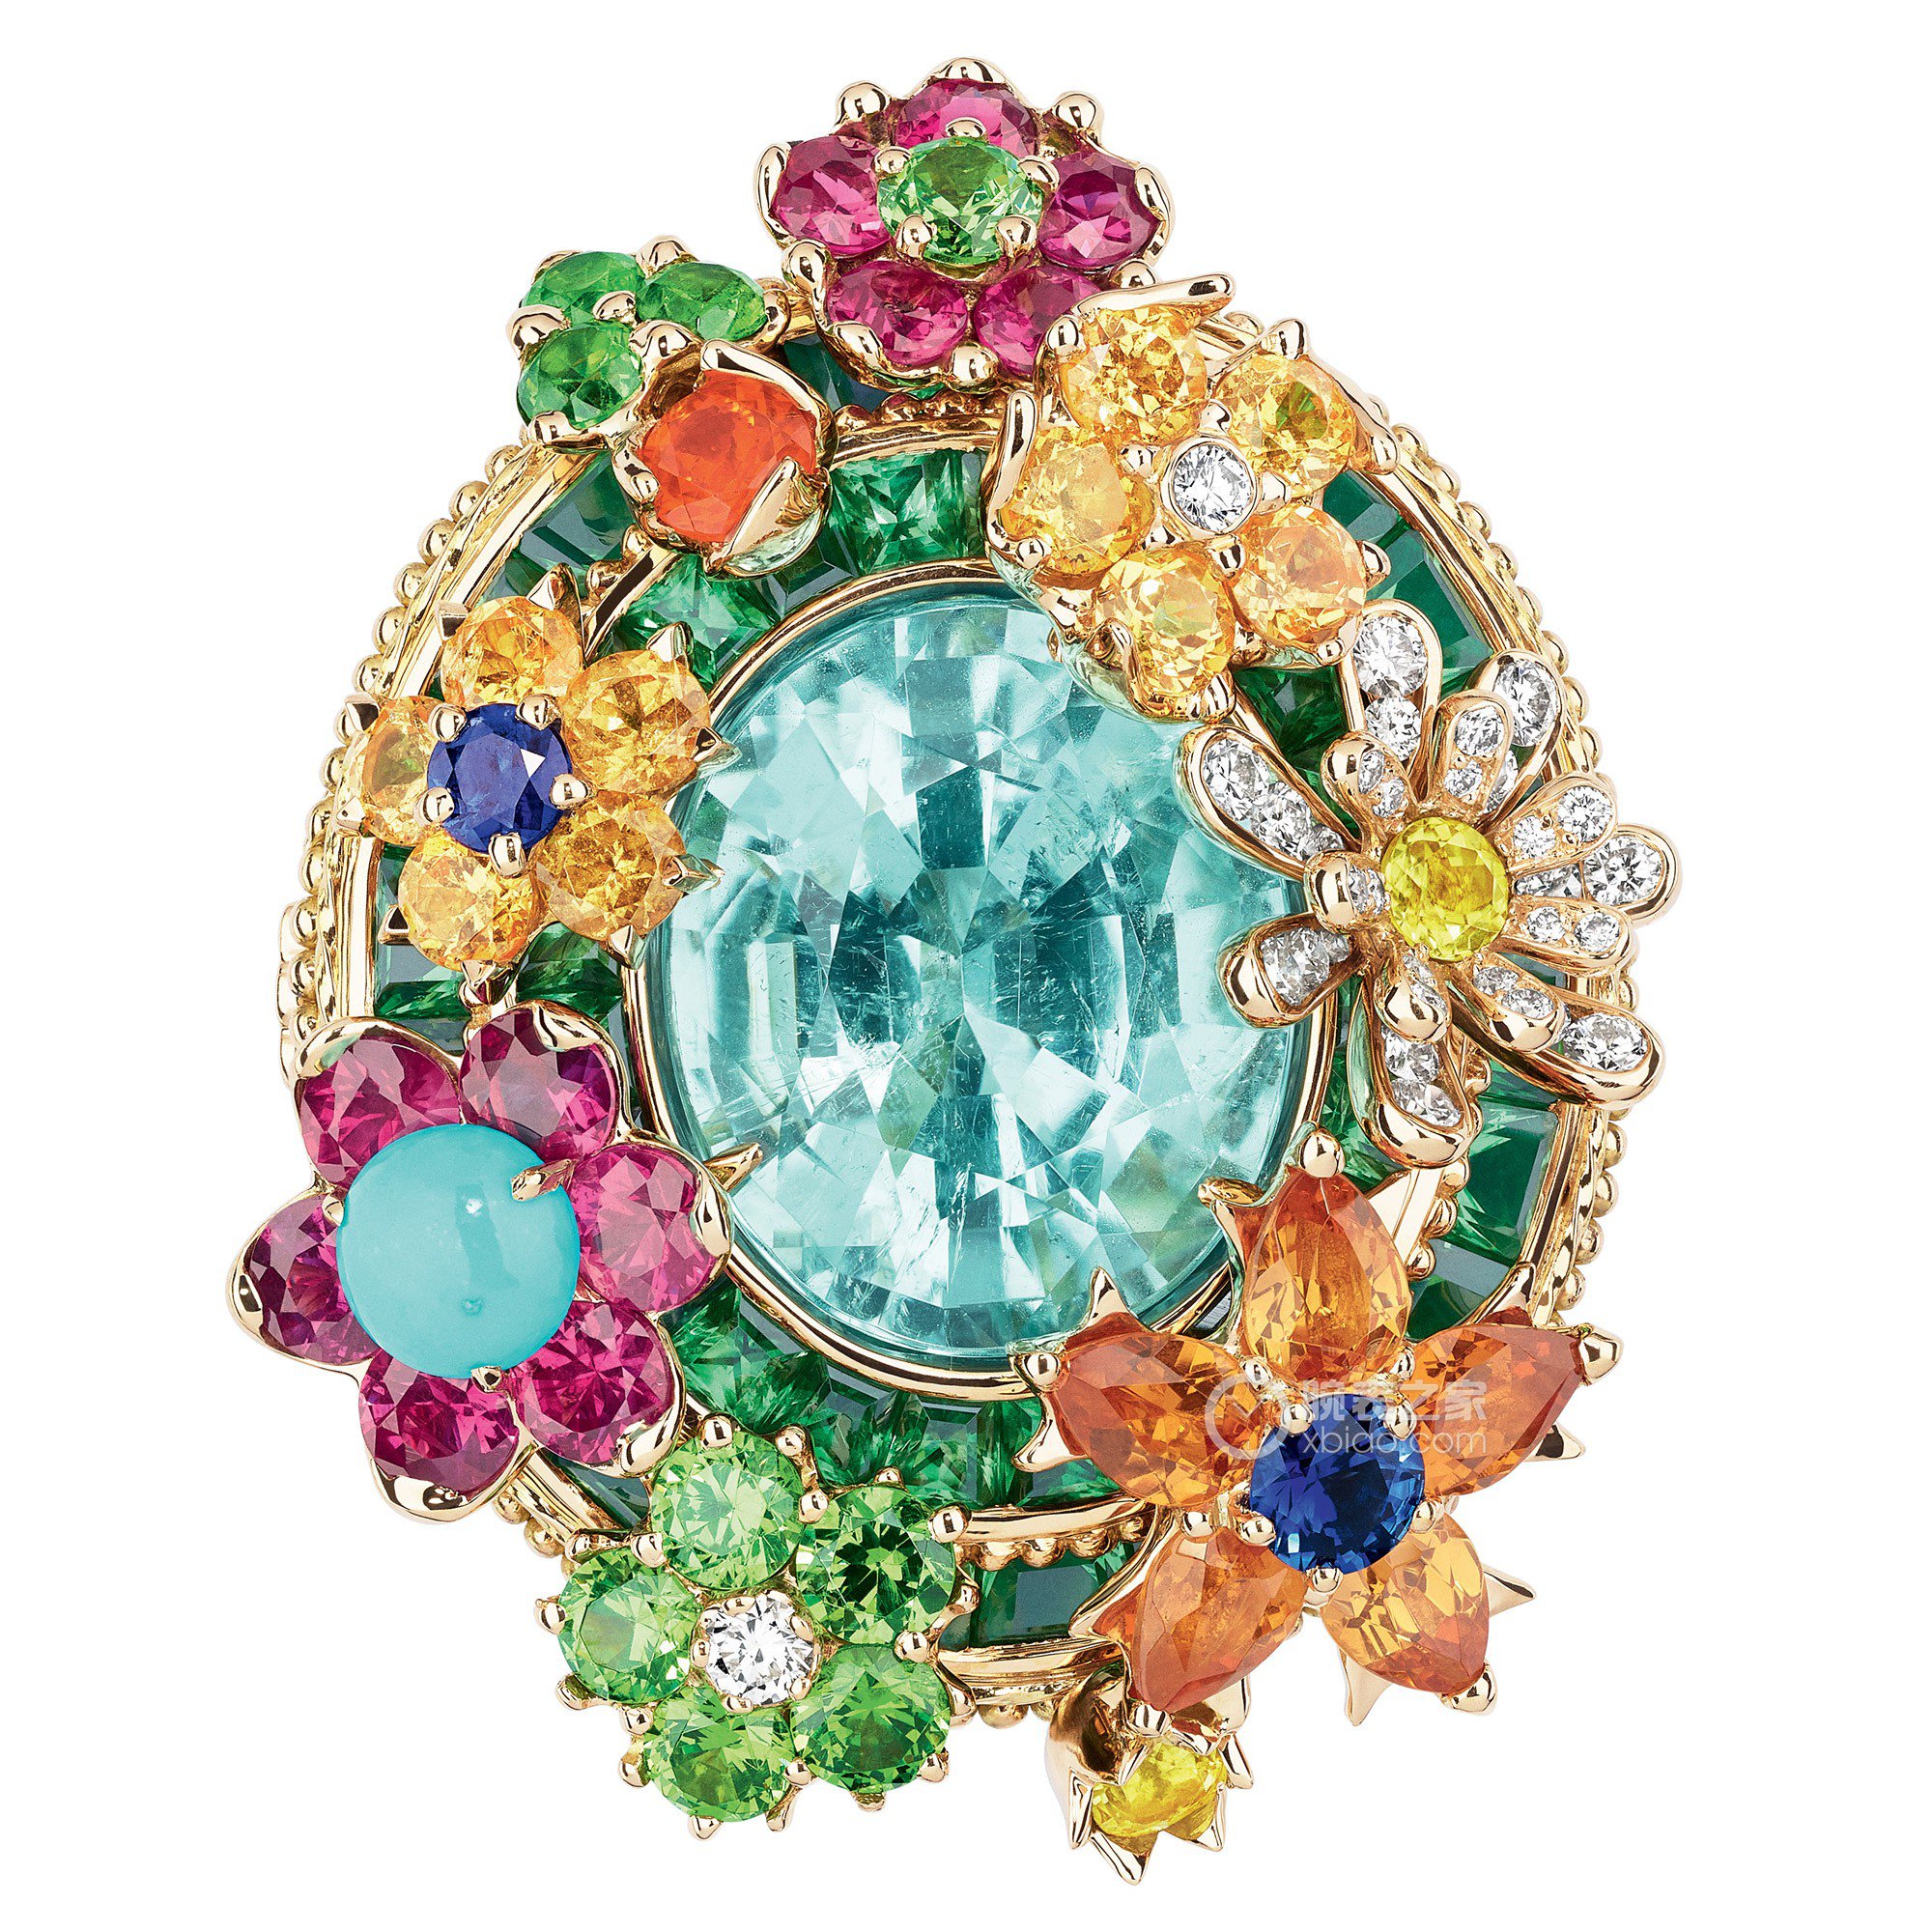 Dior 迪奥 Tie & Dior 系列戒指和耳坠 | iDaily Jewelry · 每日珠宝杂志